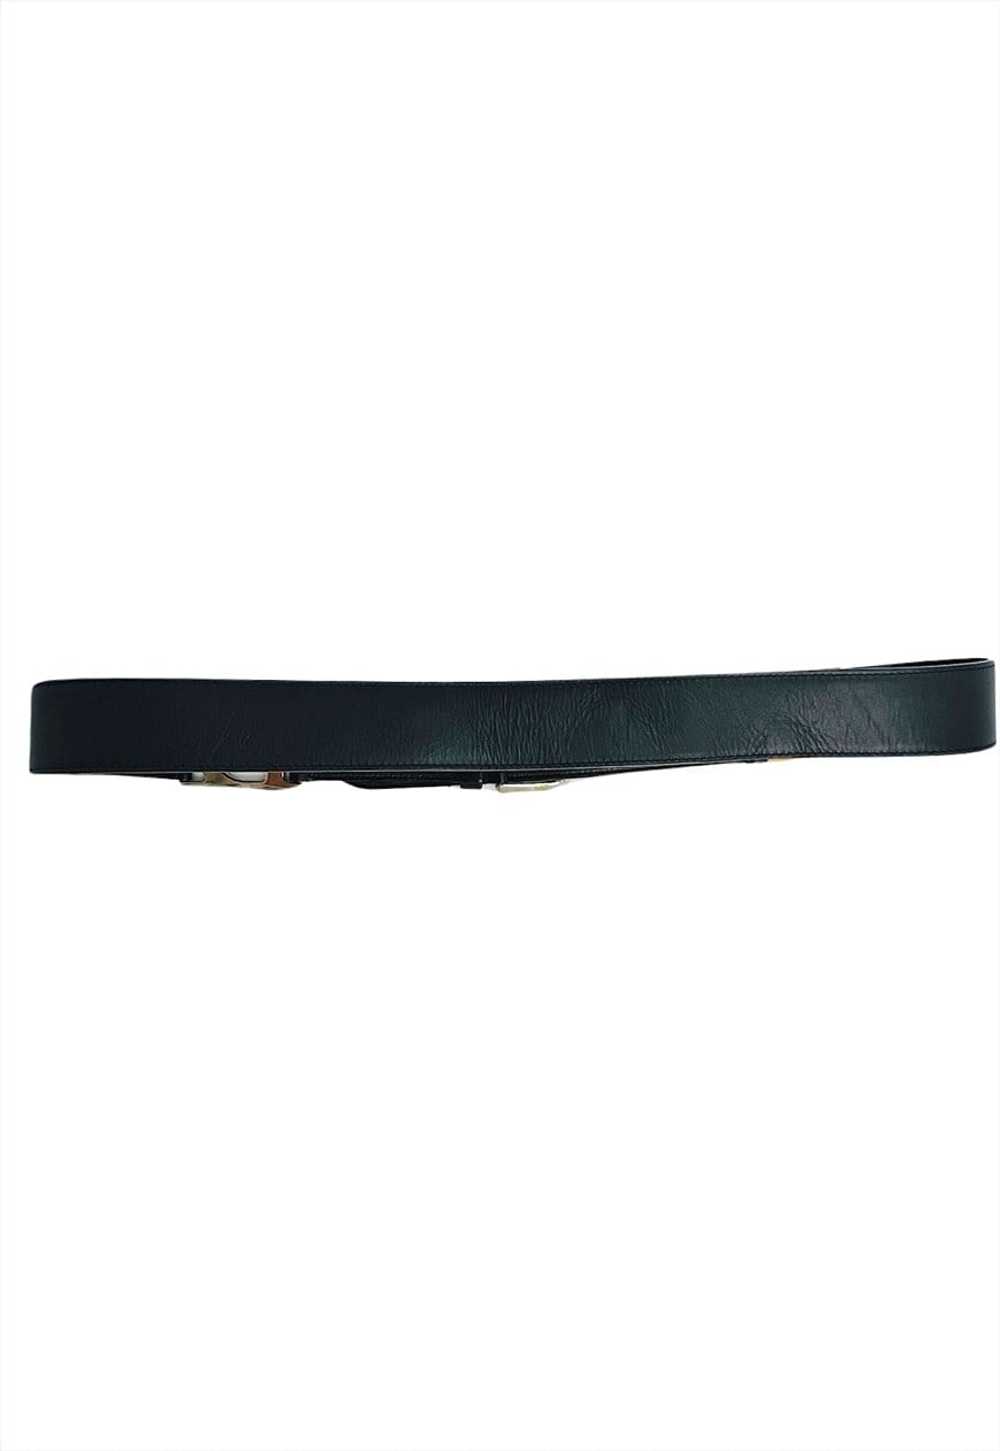 Christian Dior Belt Black Leather C D Buckle Logo… - image 2